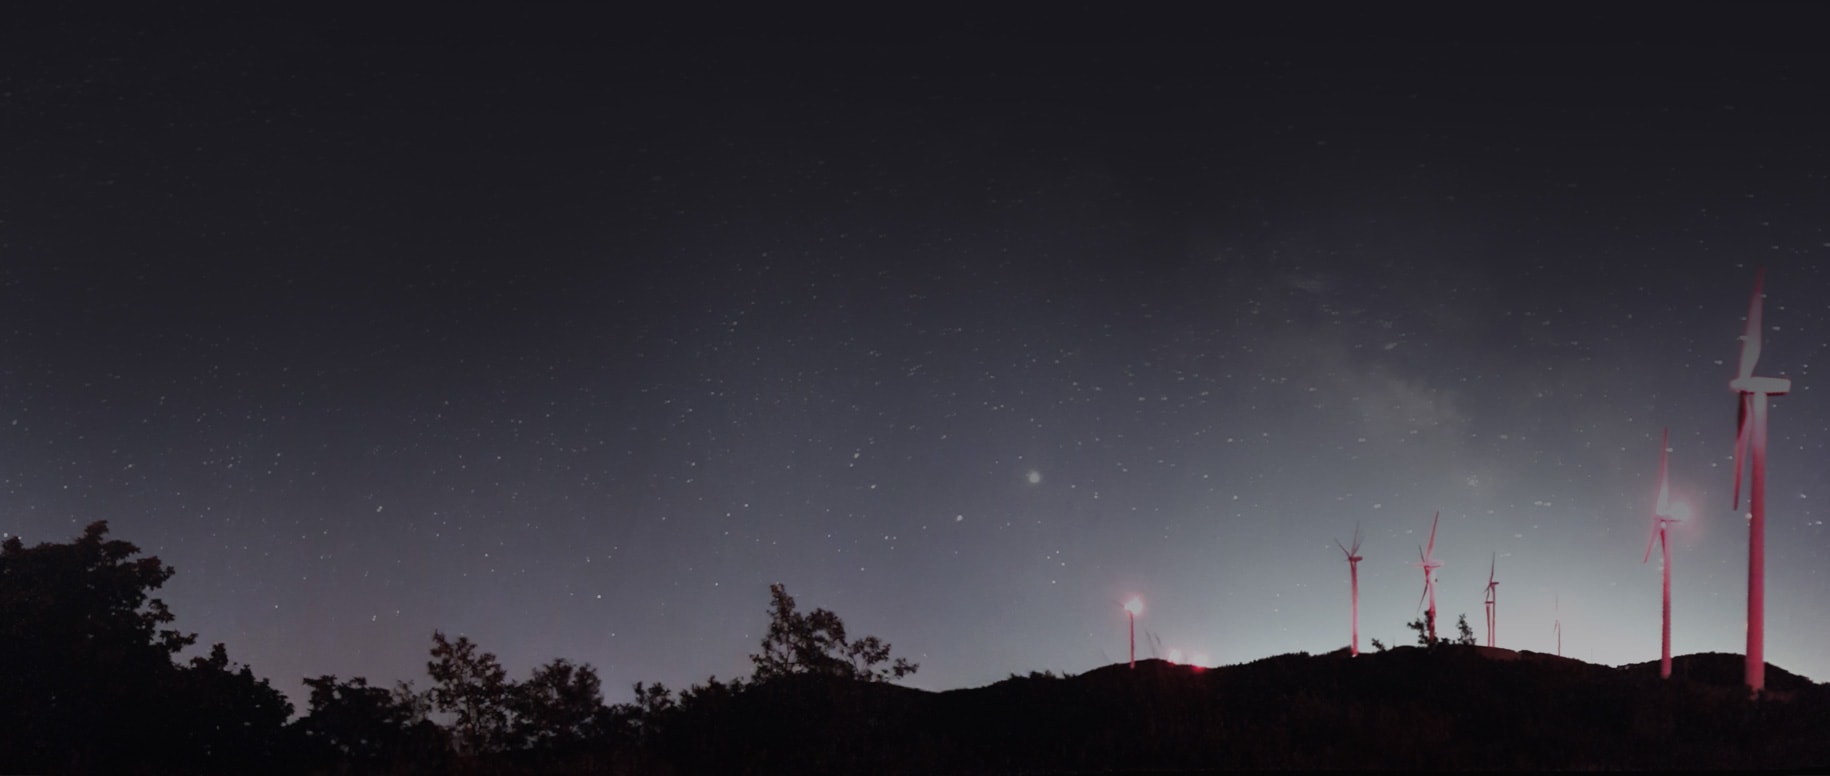 Una pequeña colina está salpicada de turbinas eólicas iluminadas en rojo en primer plano, con un cielo nocturno estrellado de fondo.